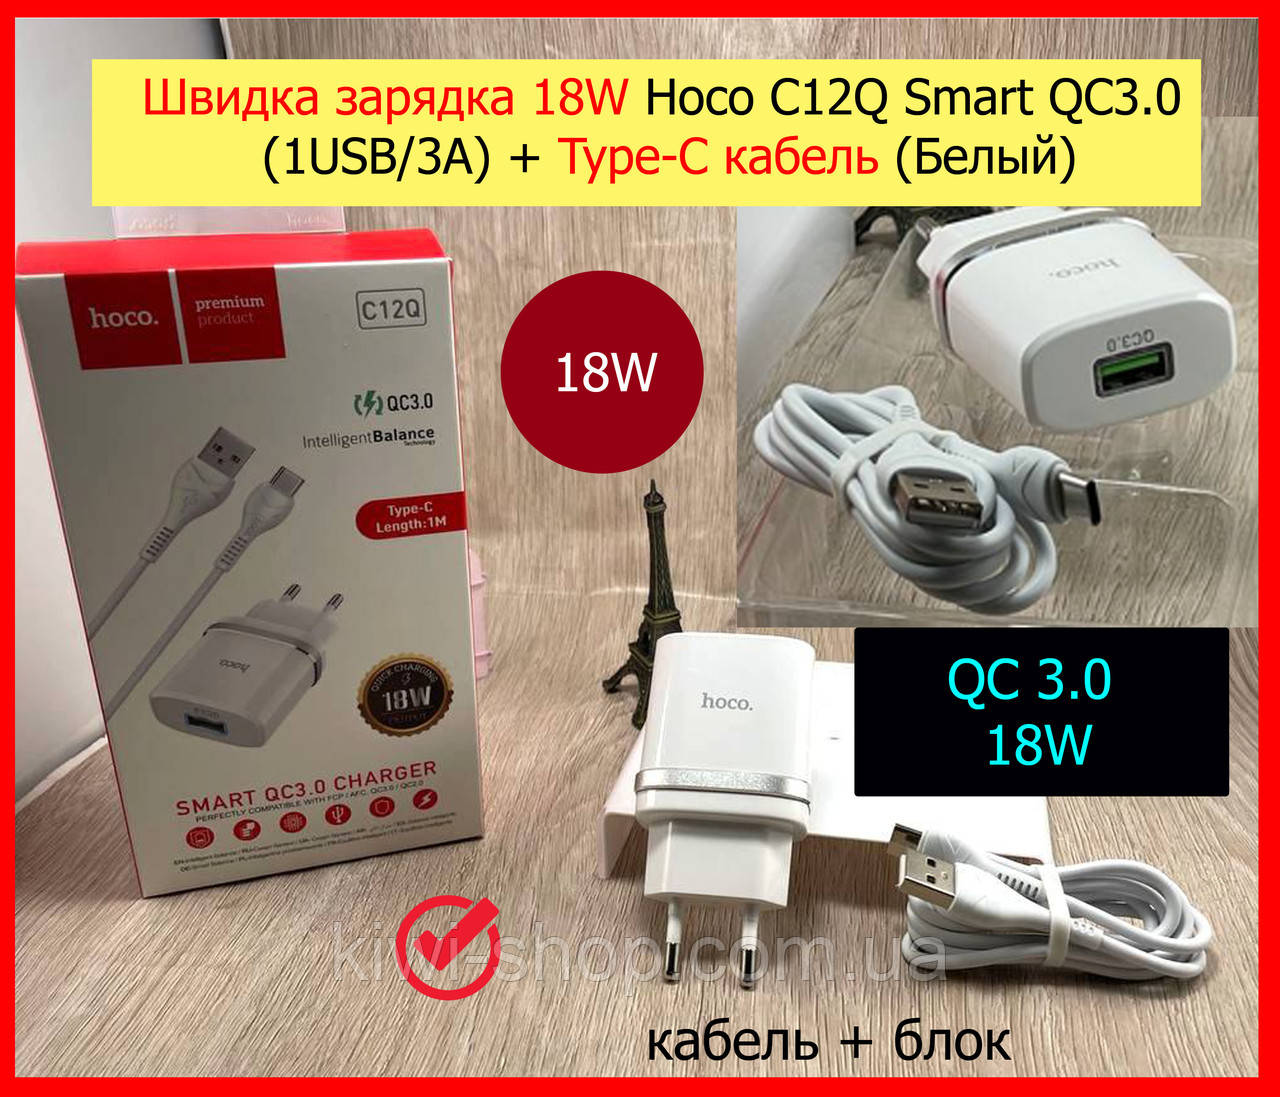 Комплект заряджання 18W Hoco C12Q Smart QC3.0 1USB/3A + Type-C кабель (Білий), ззу швидке заряджання 18W з кабелем